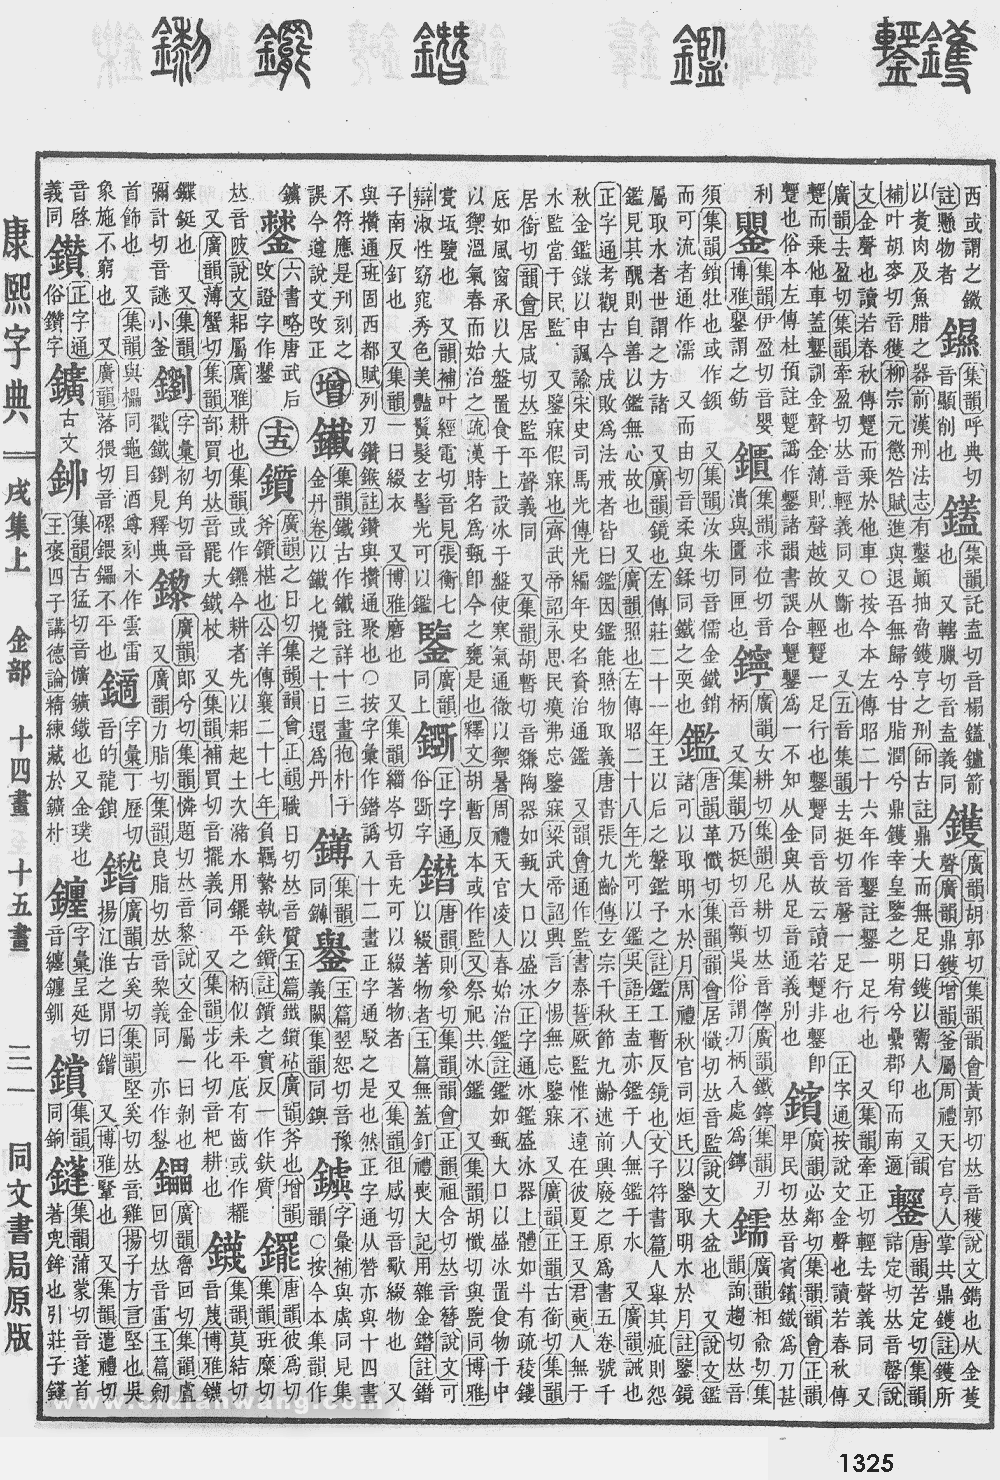 康熙字典掃描版第1325頁